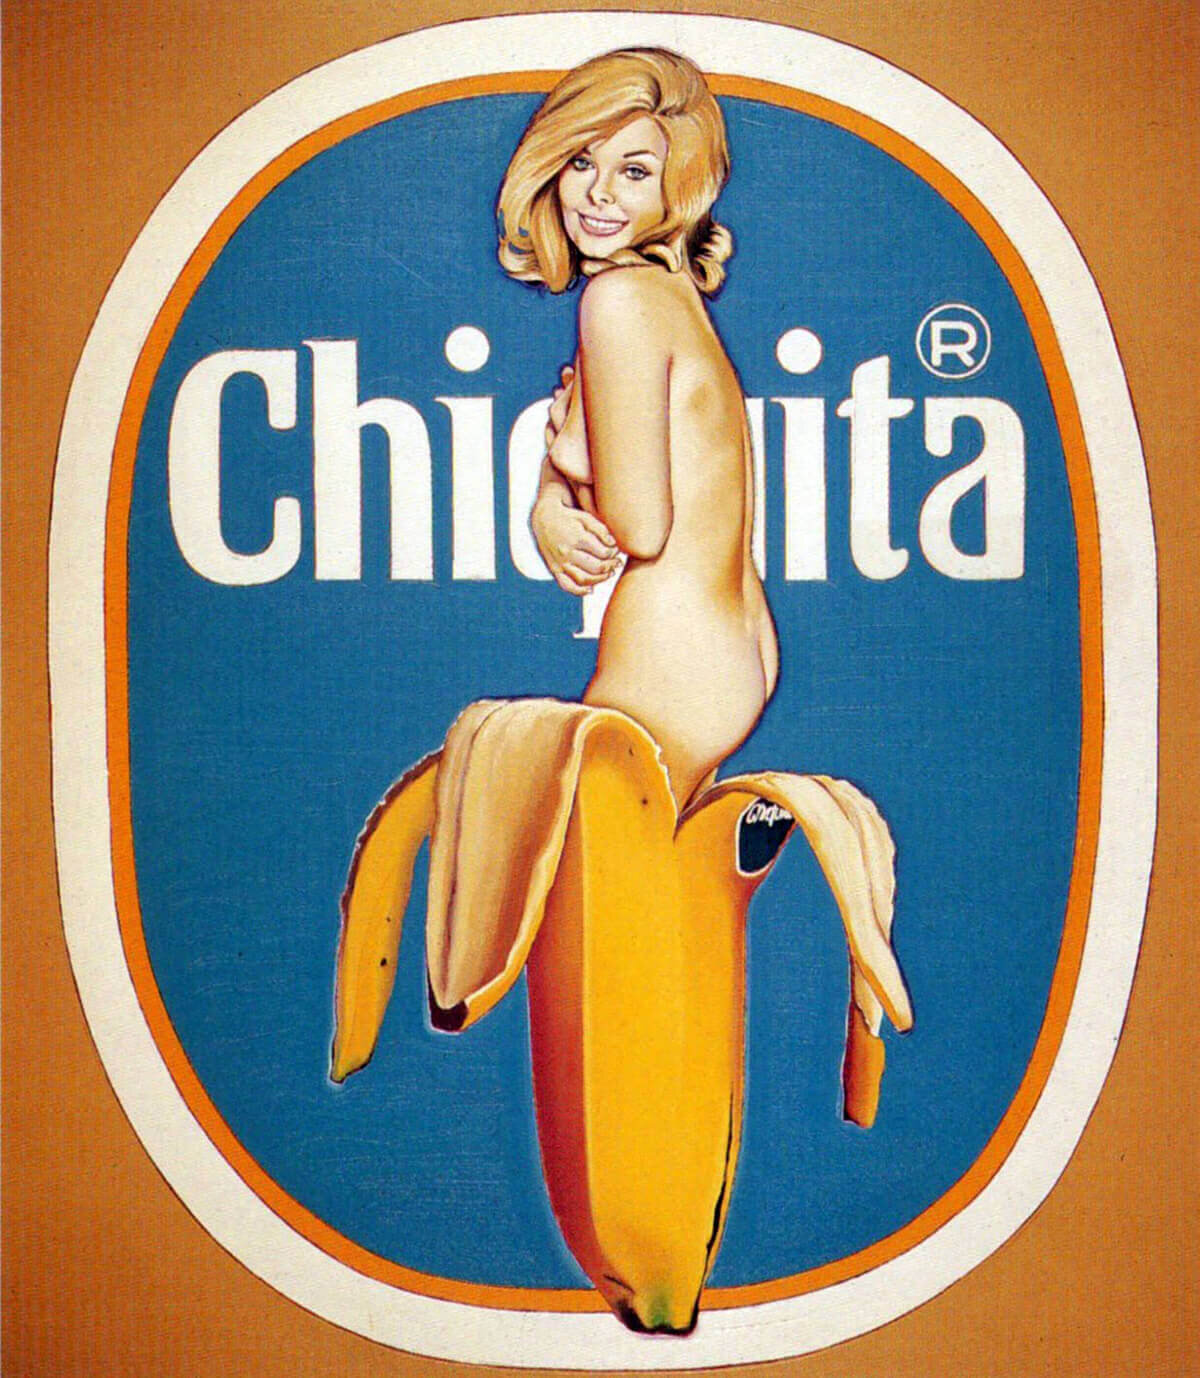 "Chiquita," 1964.